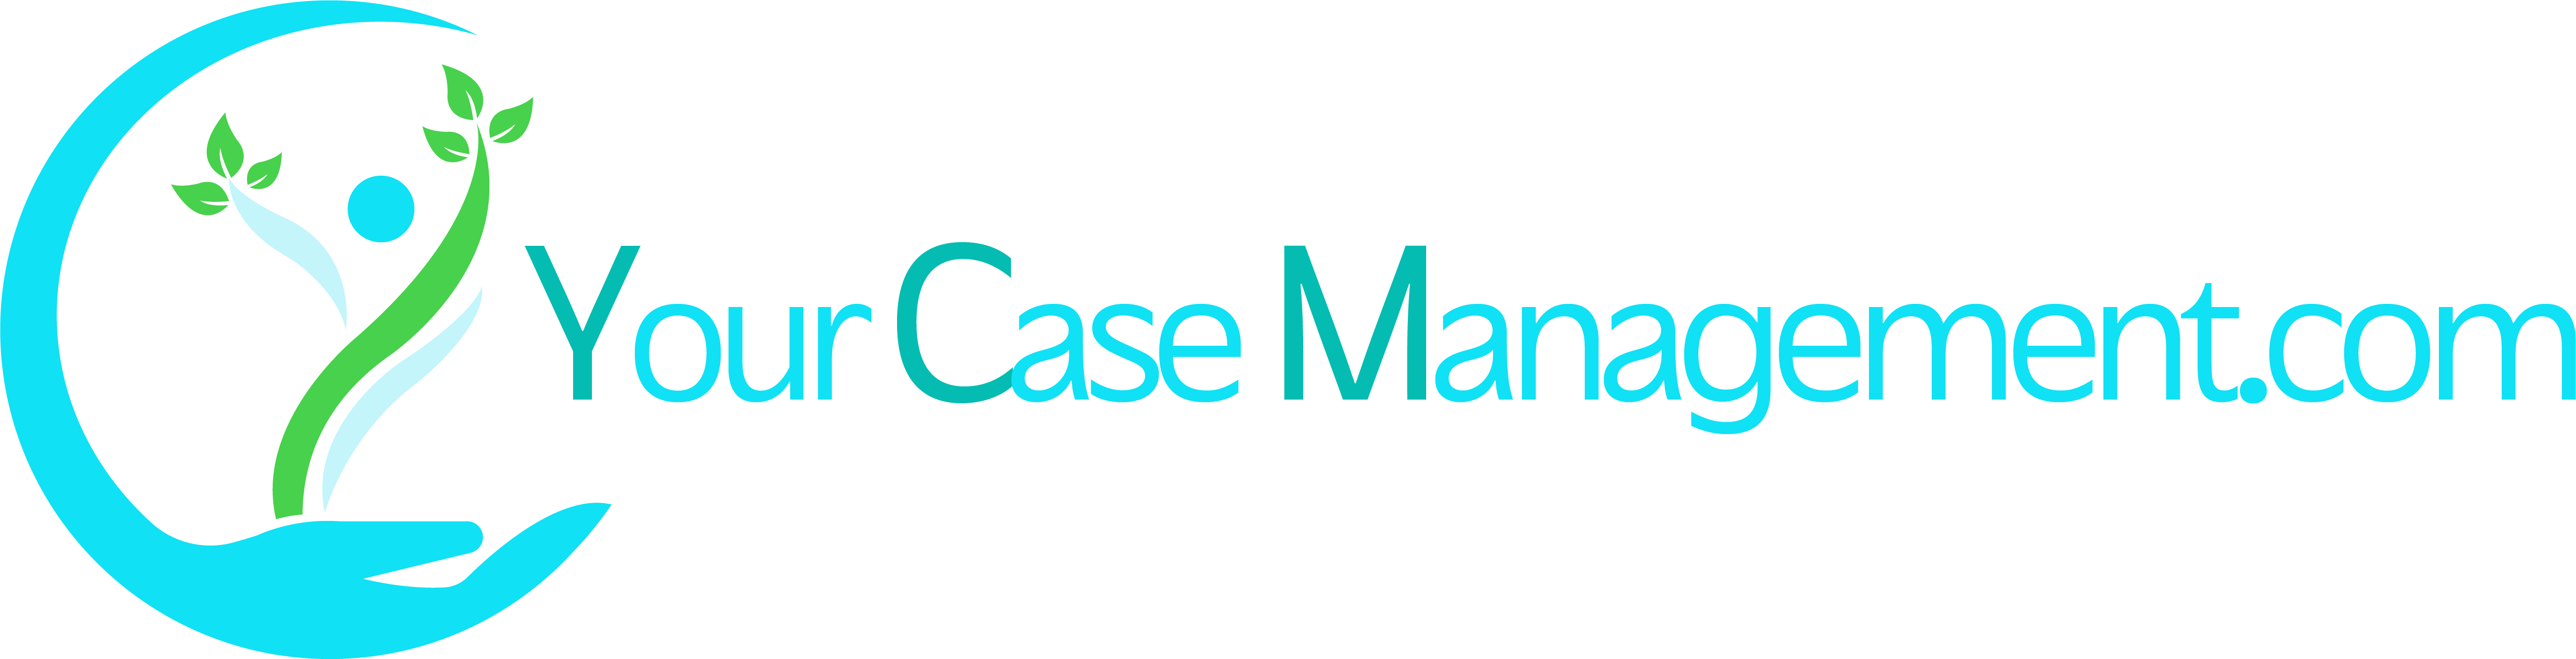 Your Case Management